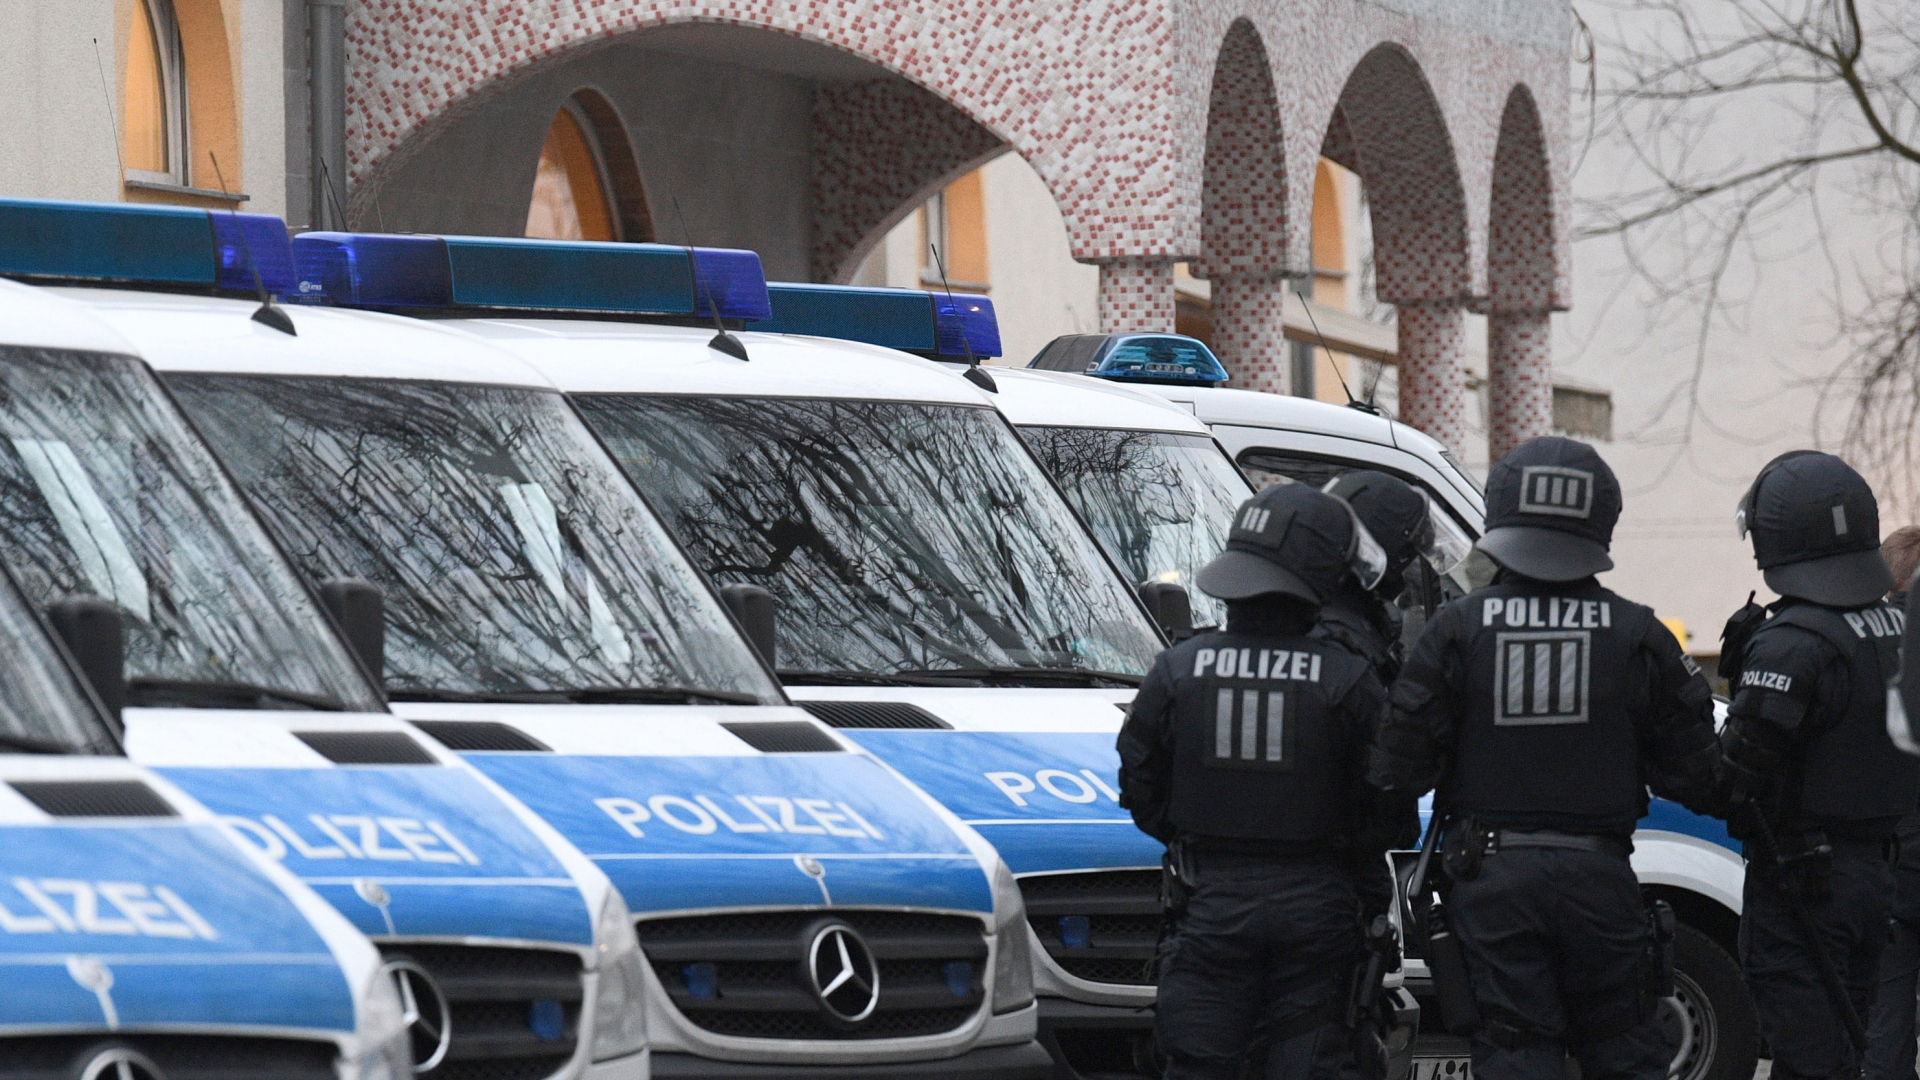 Polizisten stehen auf dem Gelände der Bilal Moschee in Frankfurt am Main an ihren Fahrzeugen.  | dpa